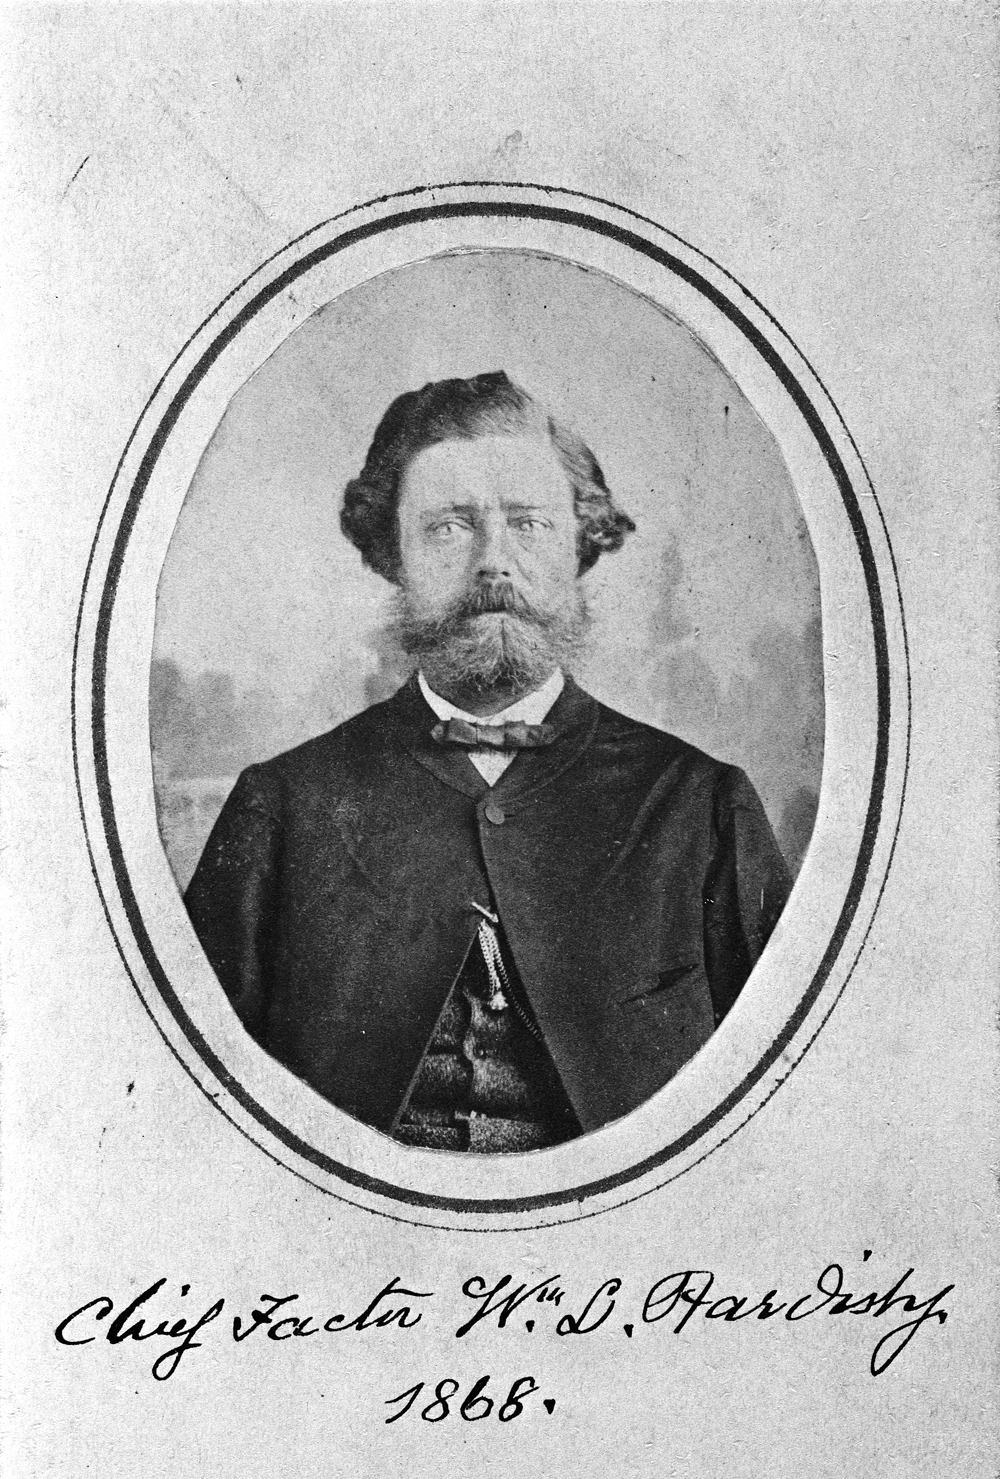 Photo du père de Belle, William Hardisty, en 1868